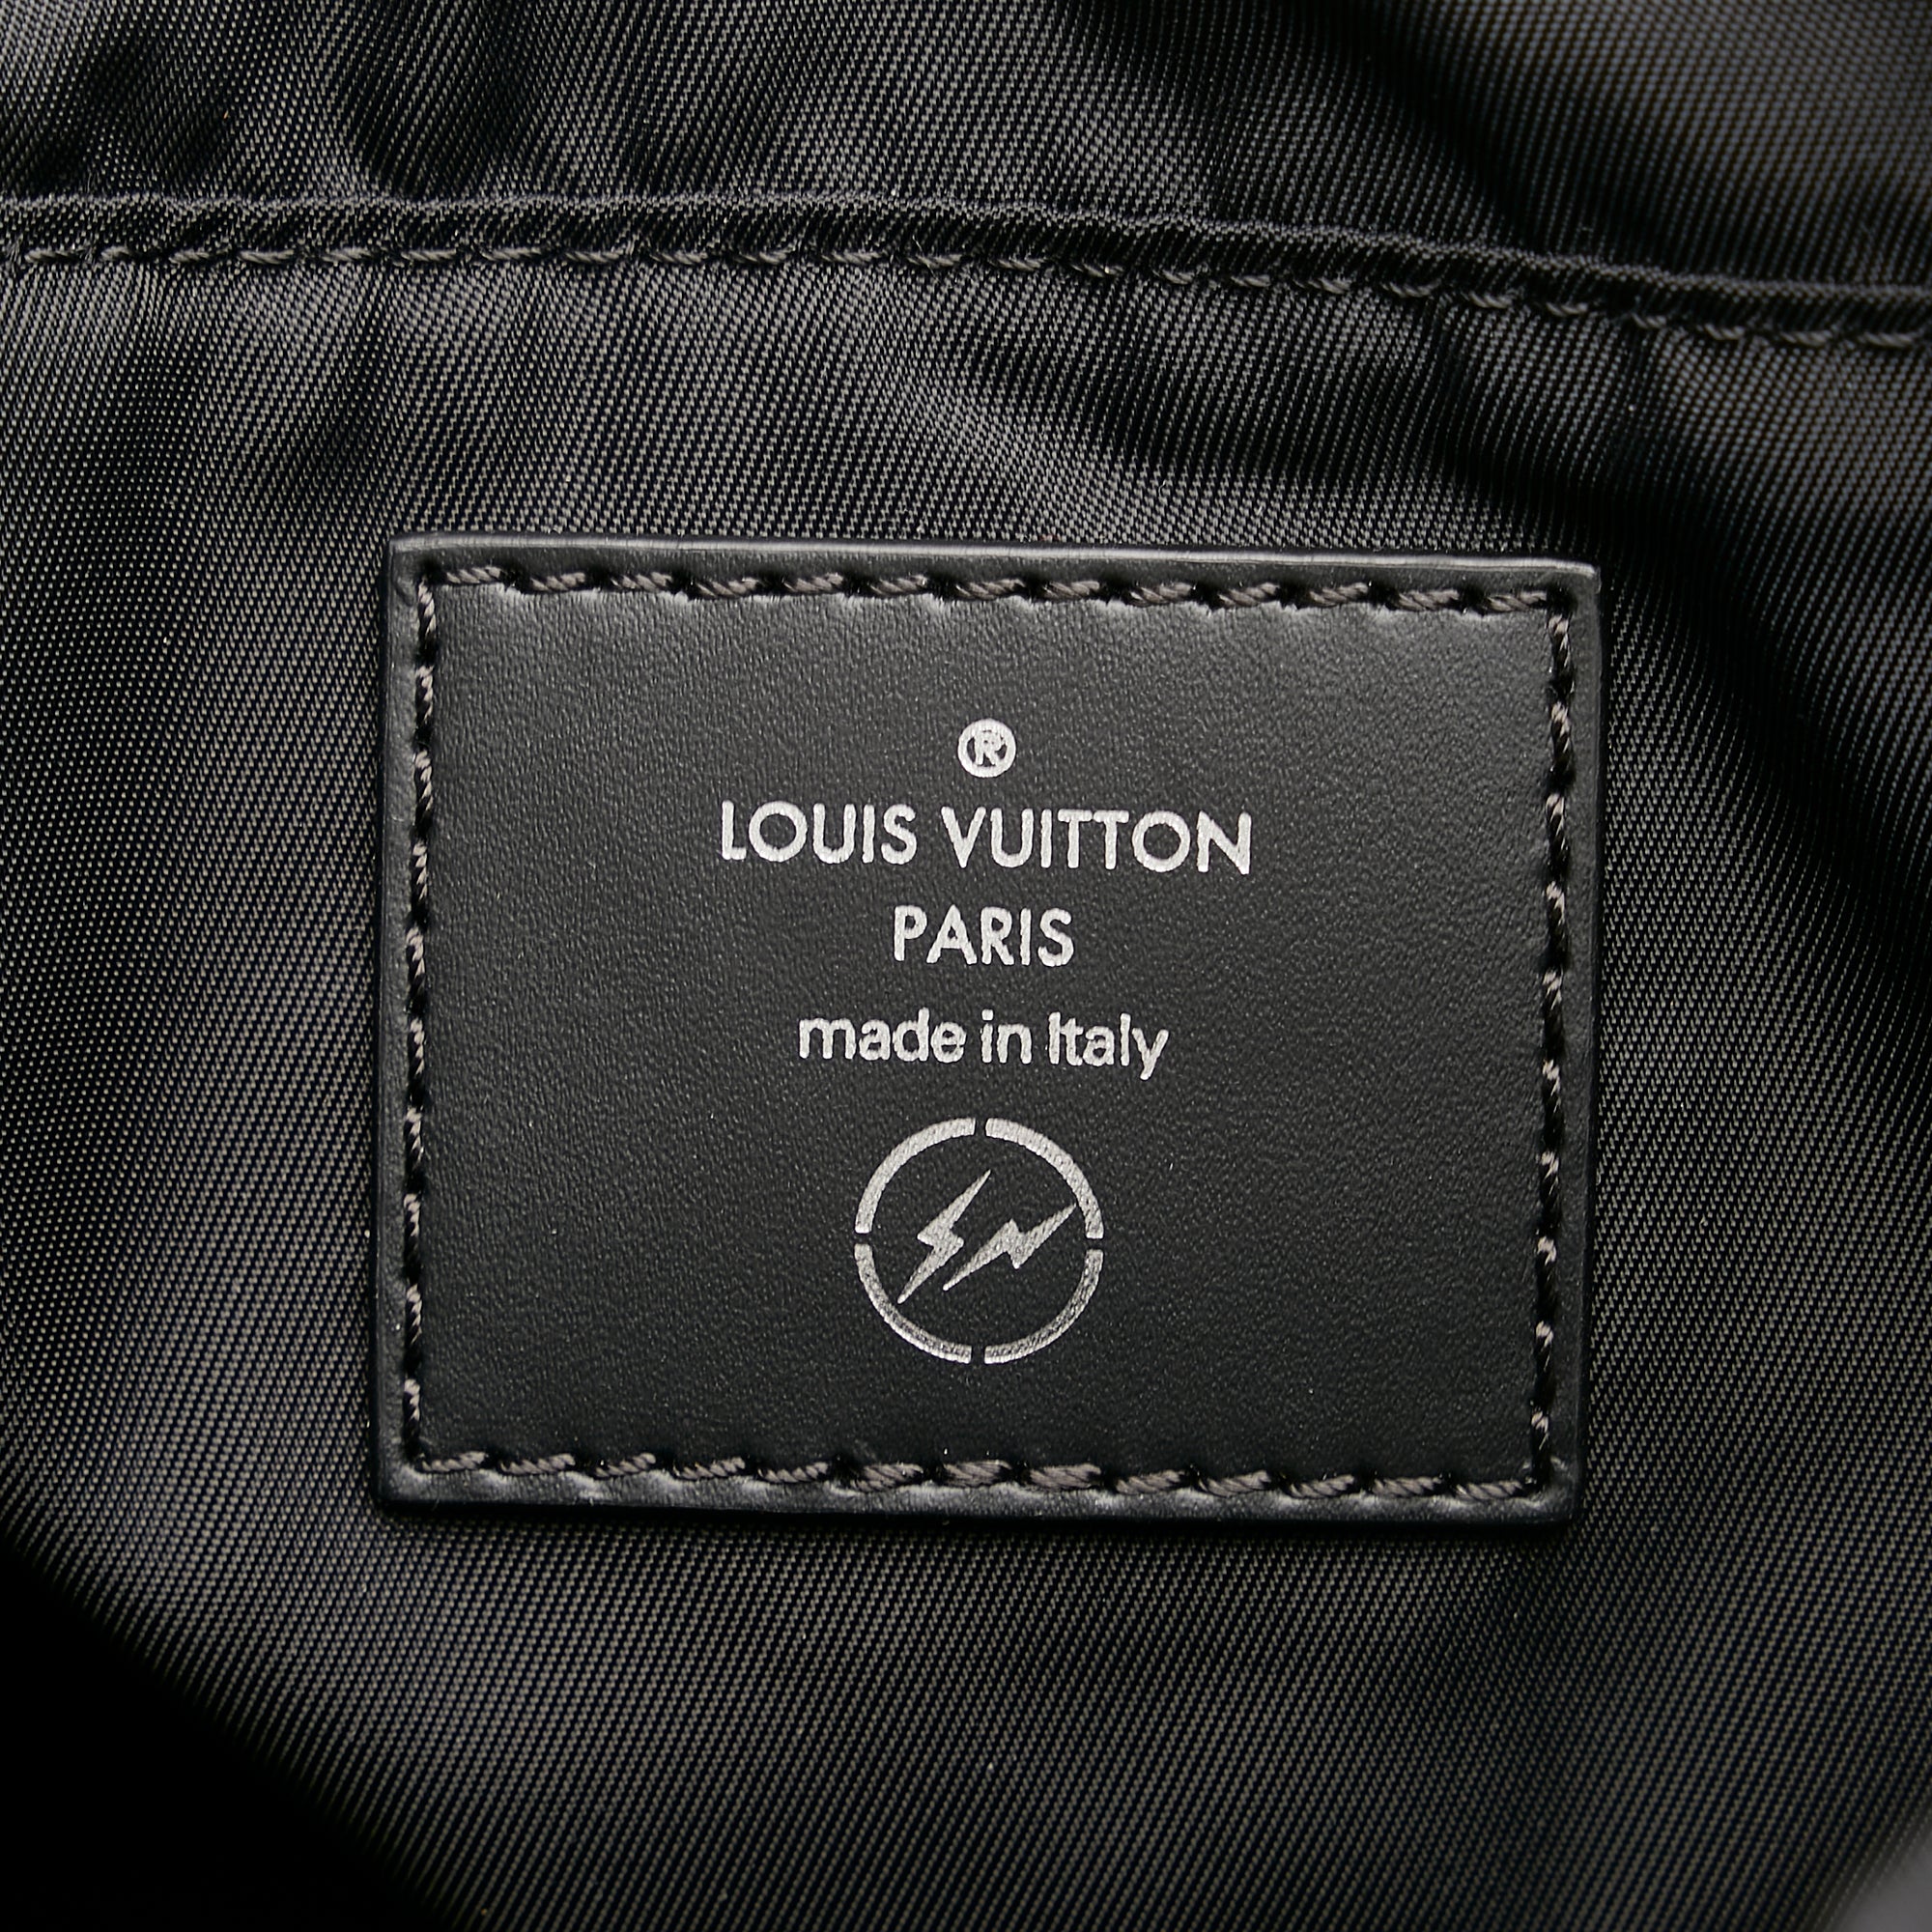 Louis Vuitton x fragment Cabas Light Monogram Eclipse Black